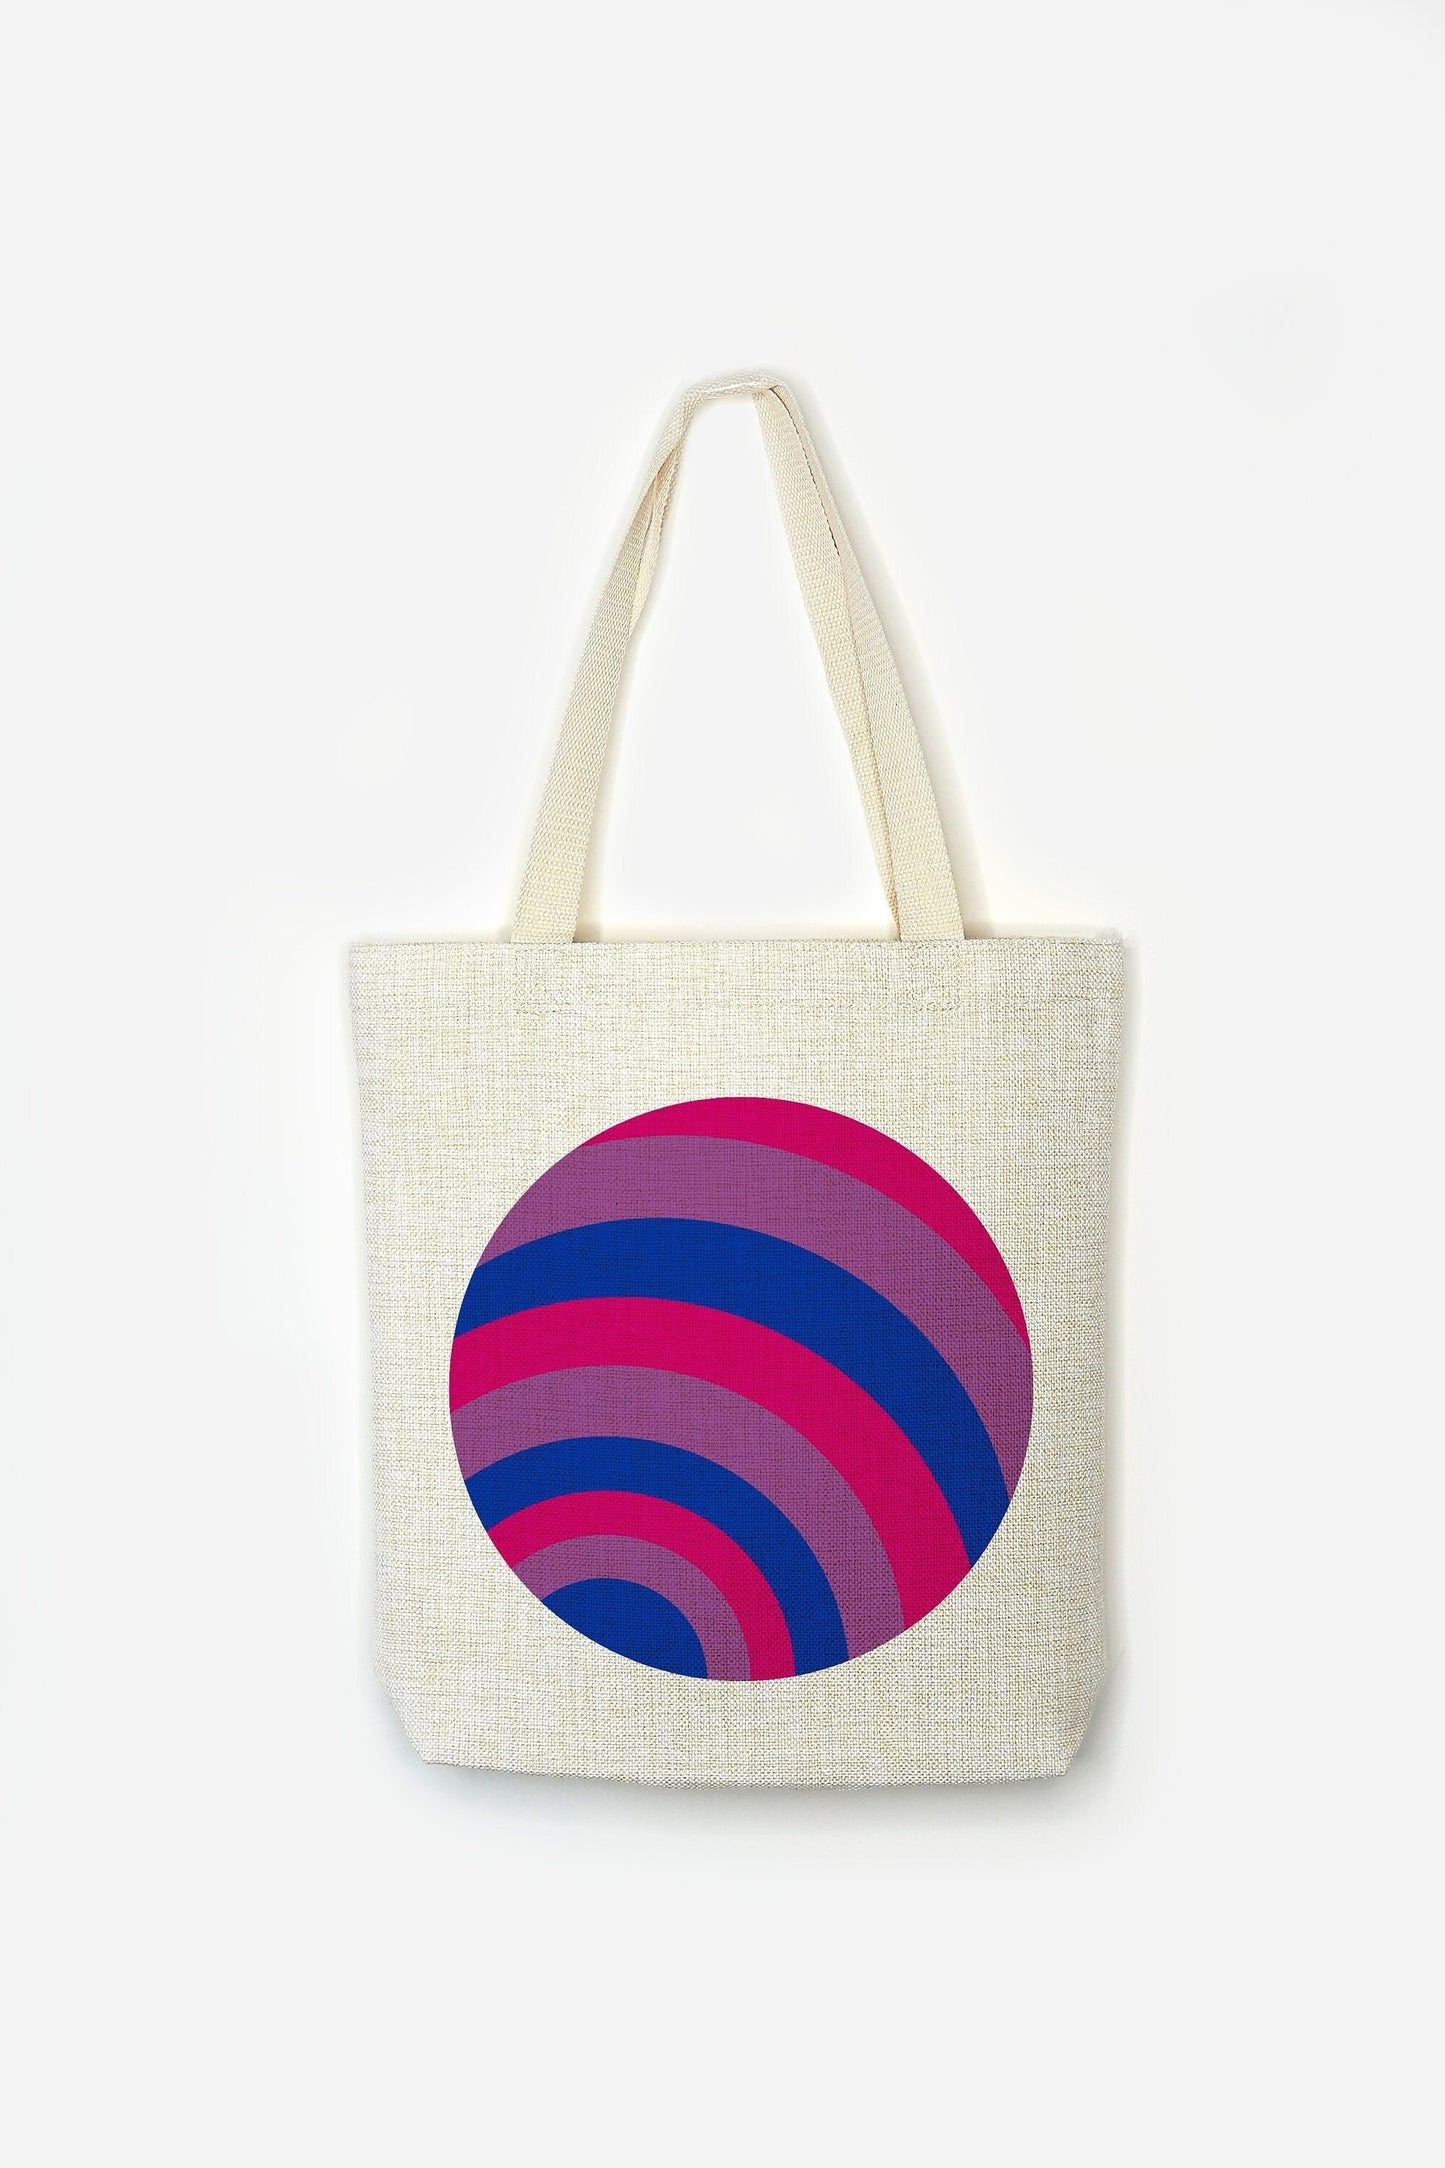 Bi Flag Tote Bag - Premium Linen Cotton Canvas - Subtle Pride Flag LGBT Bisexual  - Festival Merch